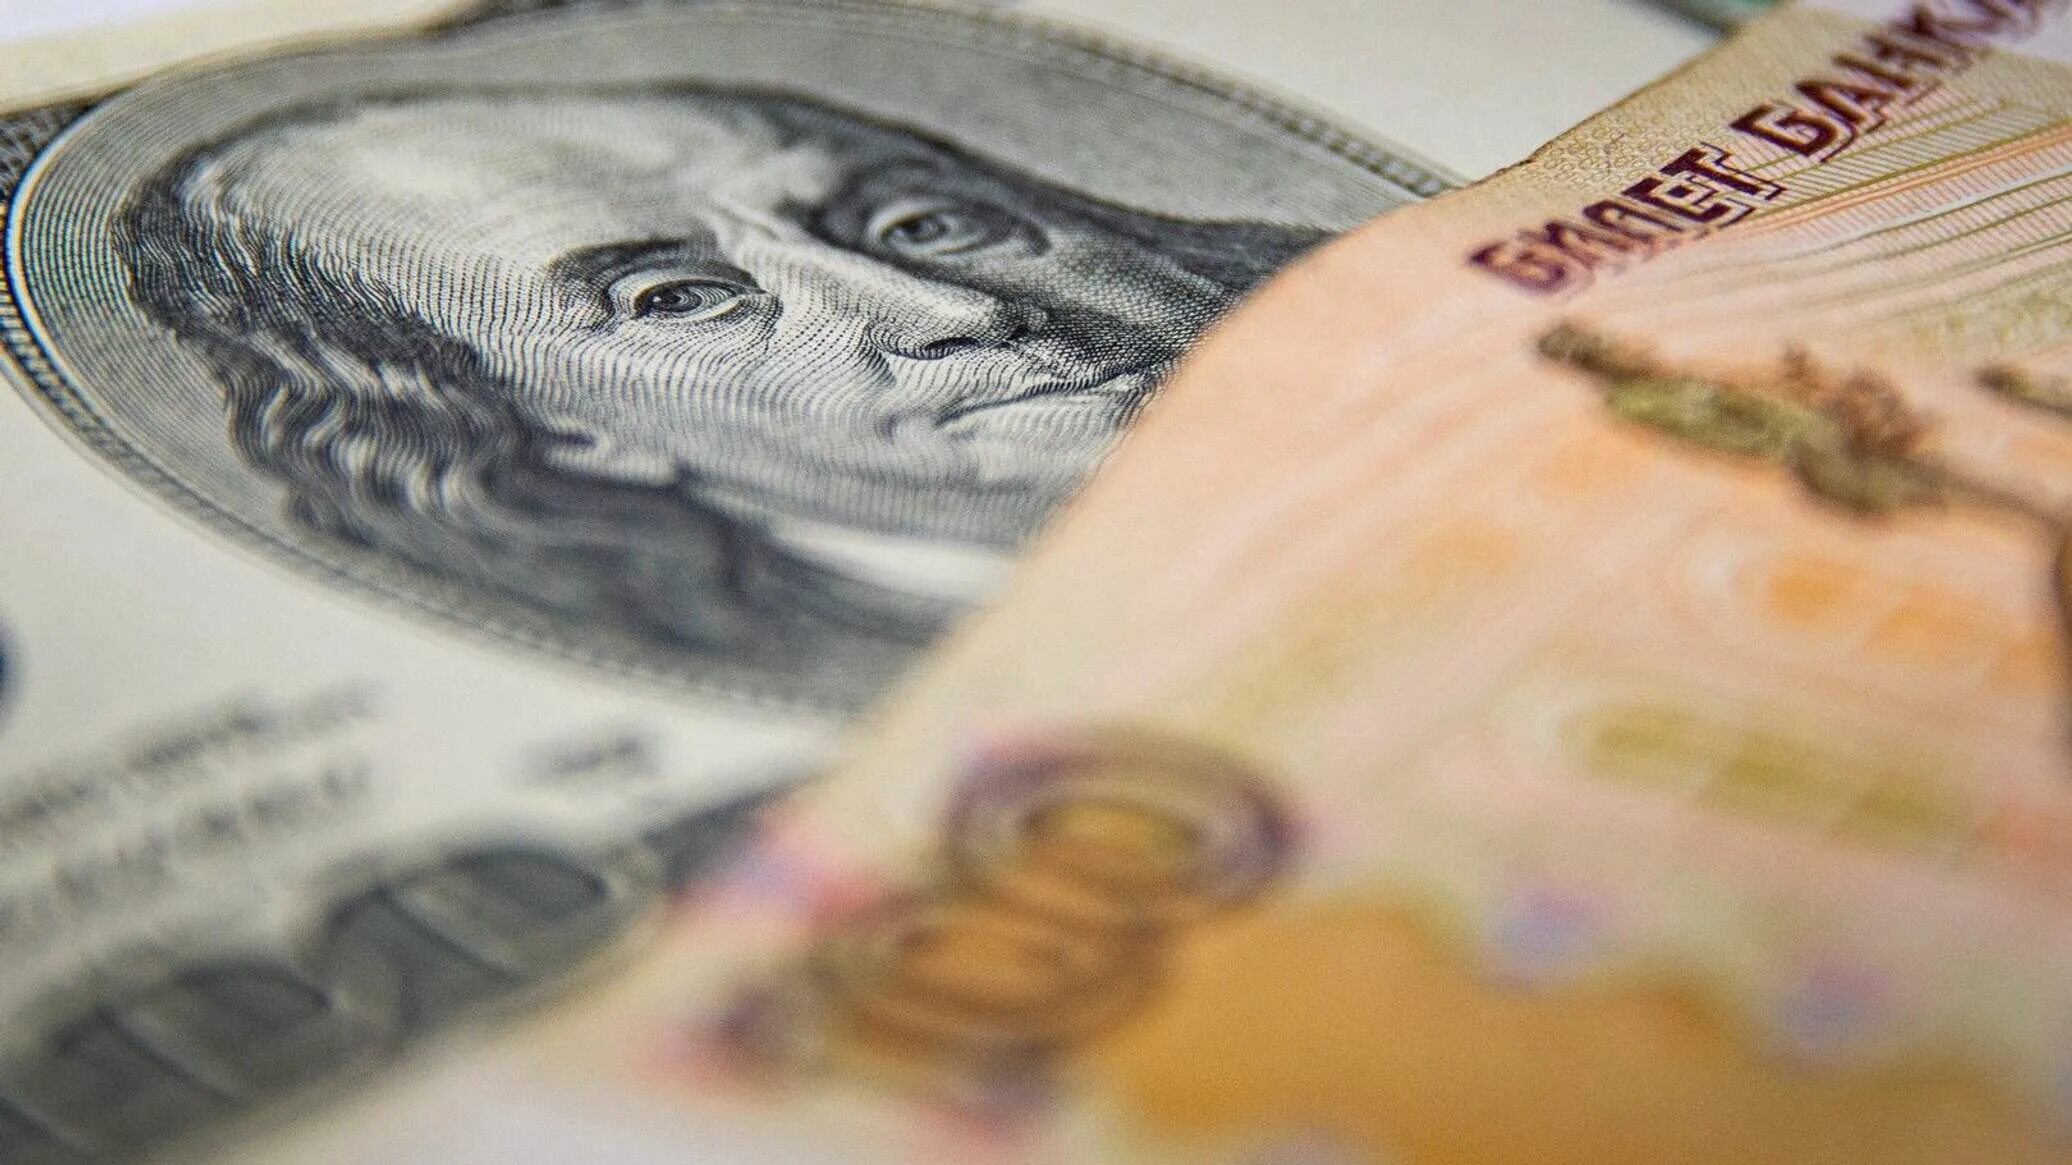 Доллары в рубли. Иностранная валюта. USD ЦБ. Падение рубля. Российской федерации или иностранной валюте